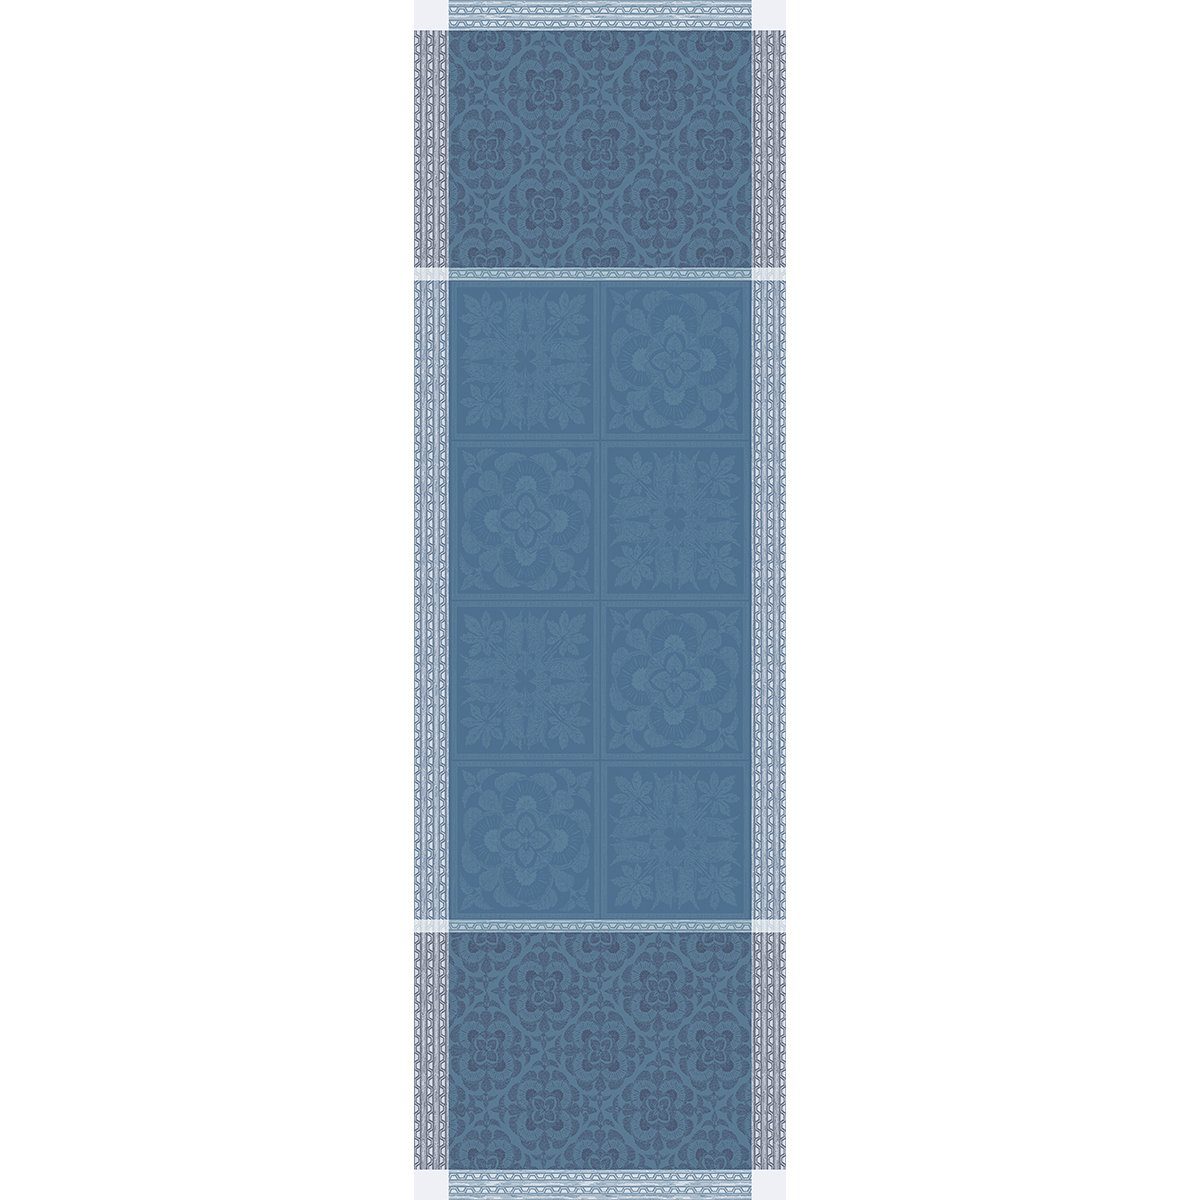 54x174 Bleu cm, Garnier jacquard-gewebt Thiebaut Tischläufer Tischläufer Harmonie